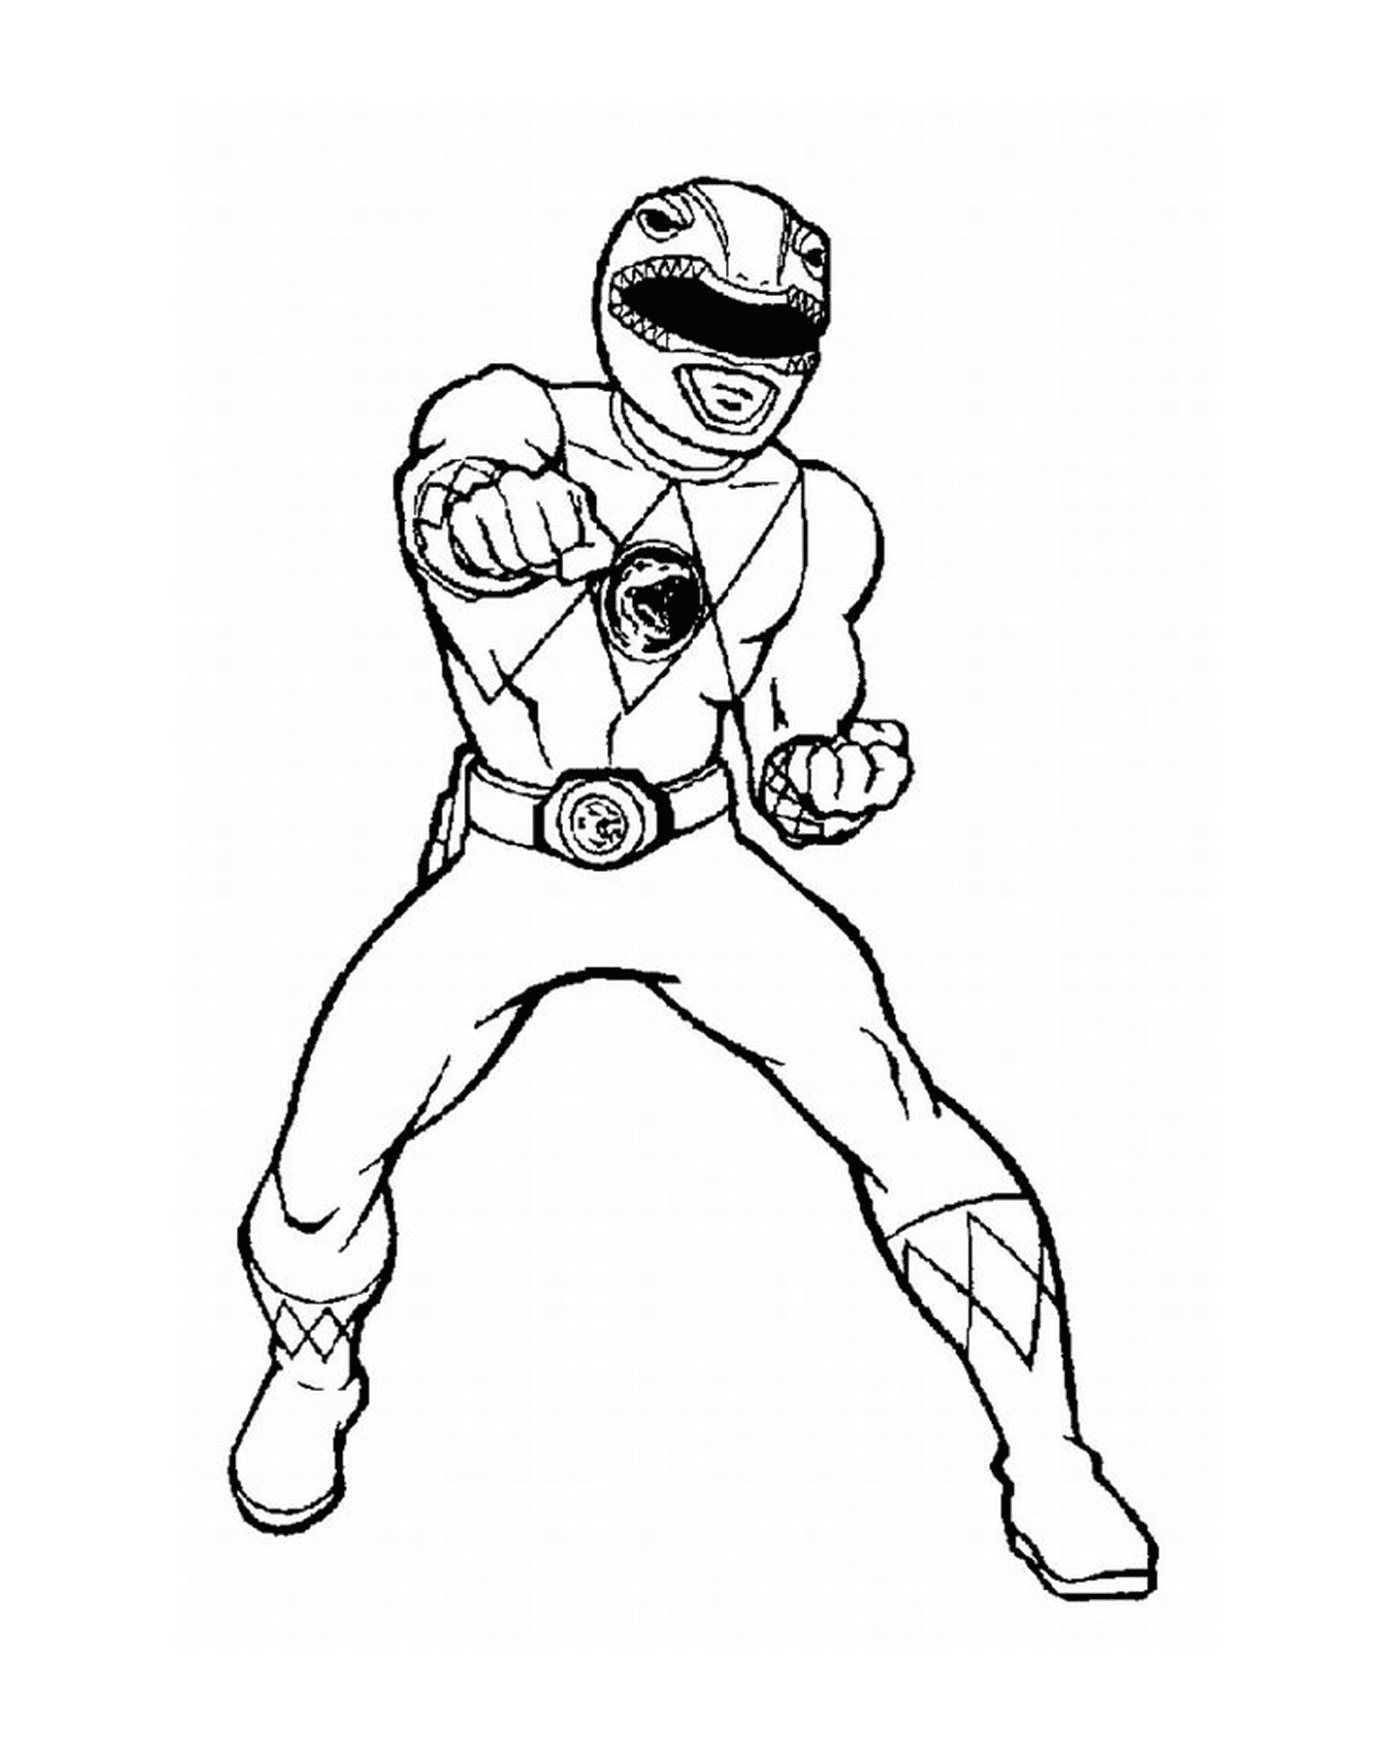  Power Ranger da Selva Fury praticando karatê 